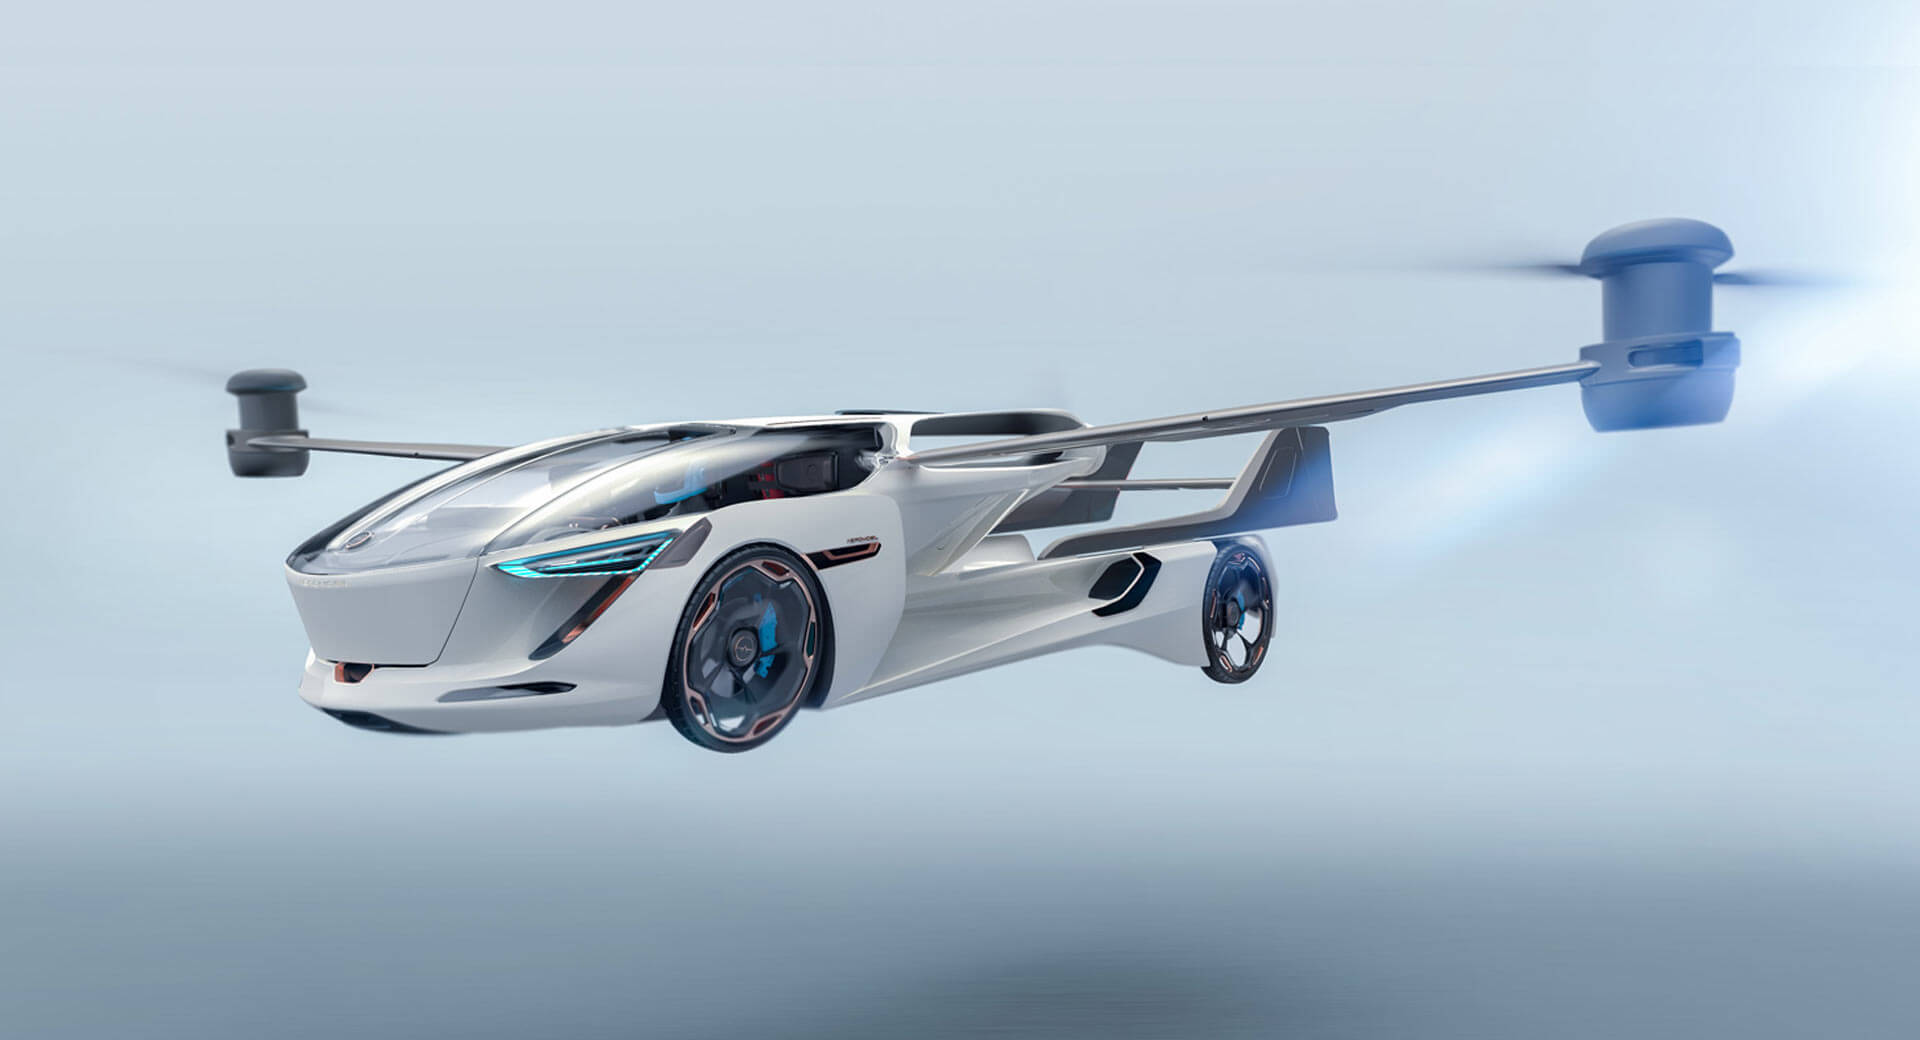 السيارة الطائرة إيروموبيل VTOL 5.0 تكشف نفسها من المستقبل